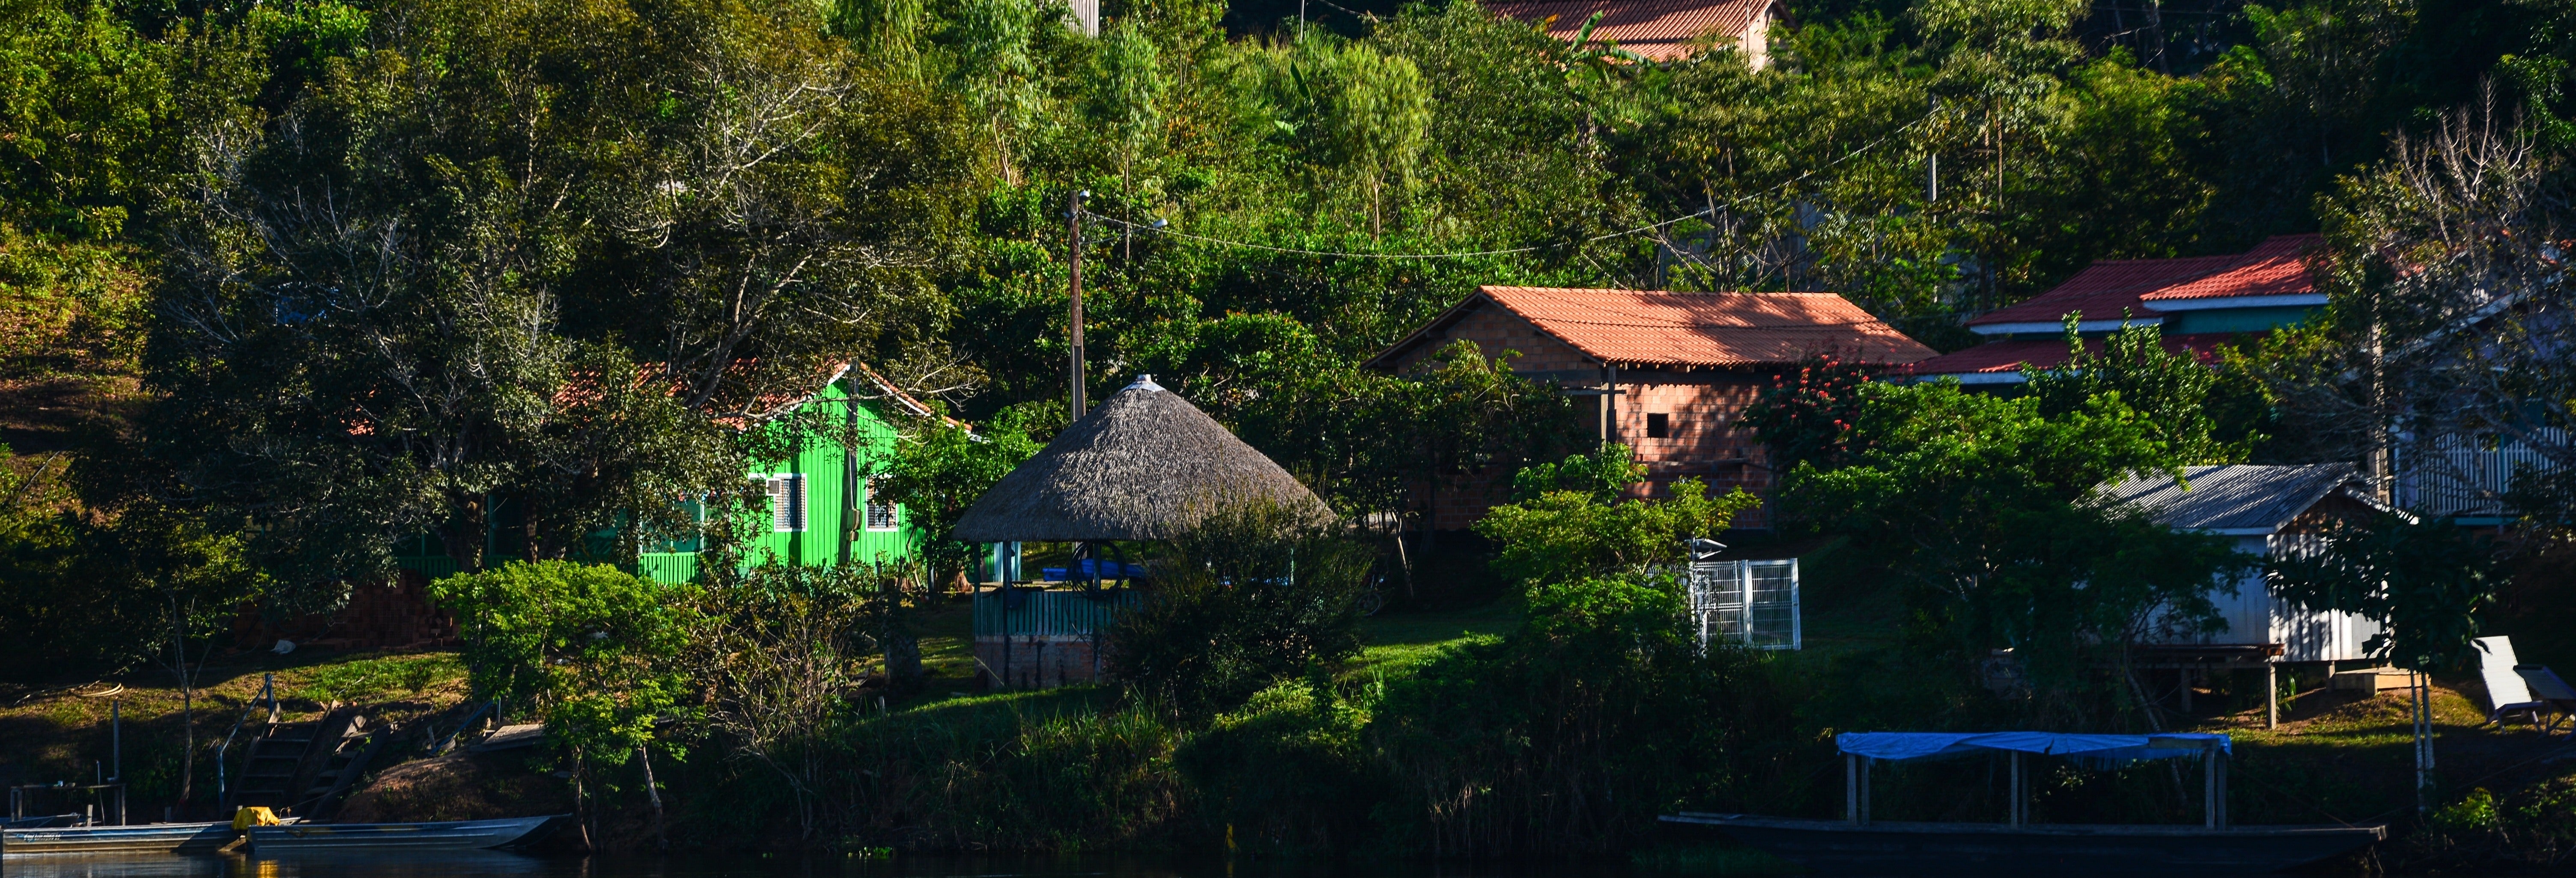 Visita a uma comunidade quilombola + Praia Barra de Gramame